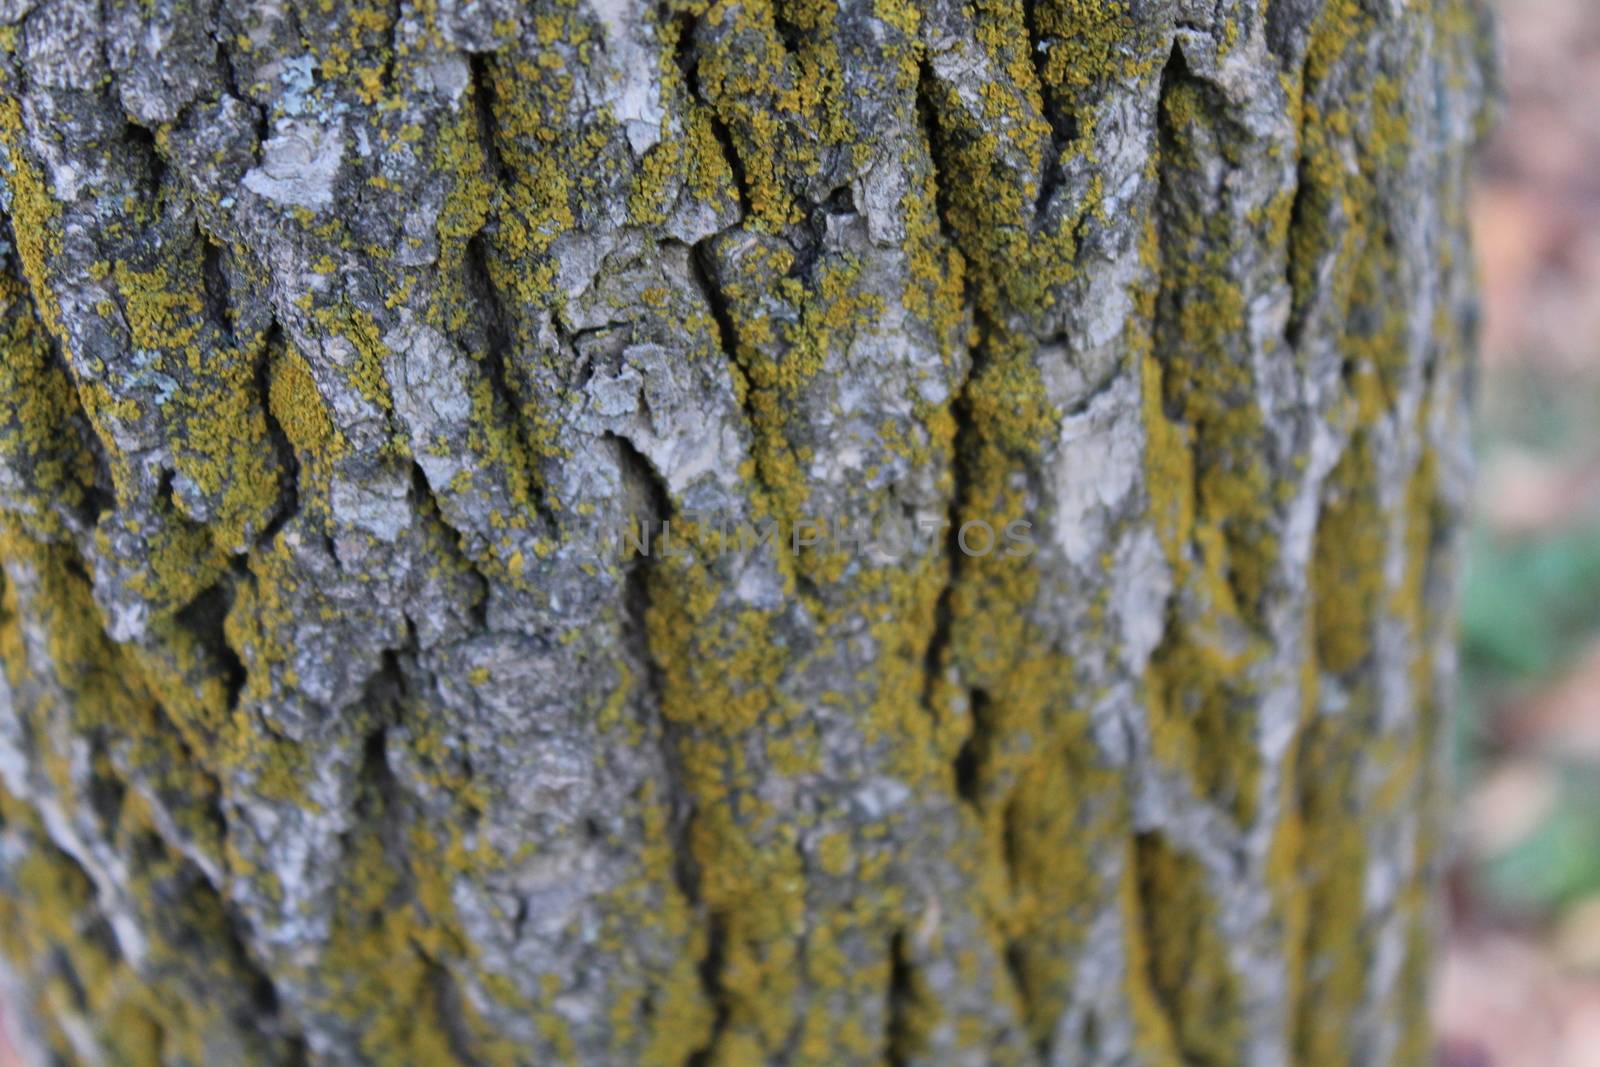 Oak tree bark by nurjan100